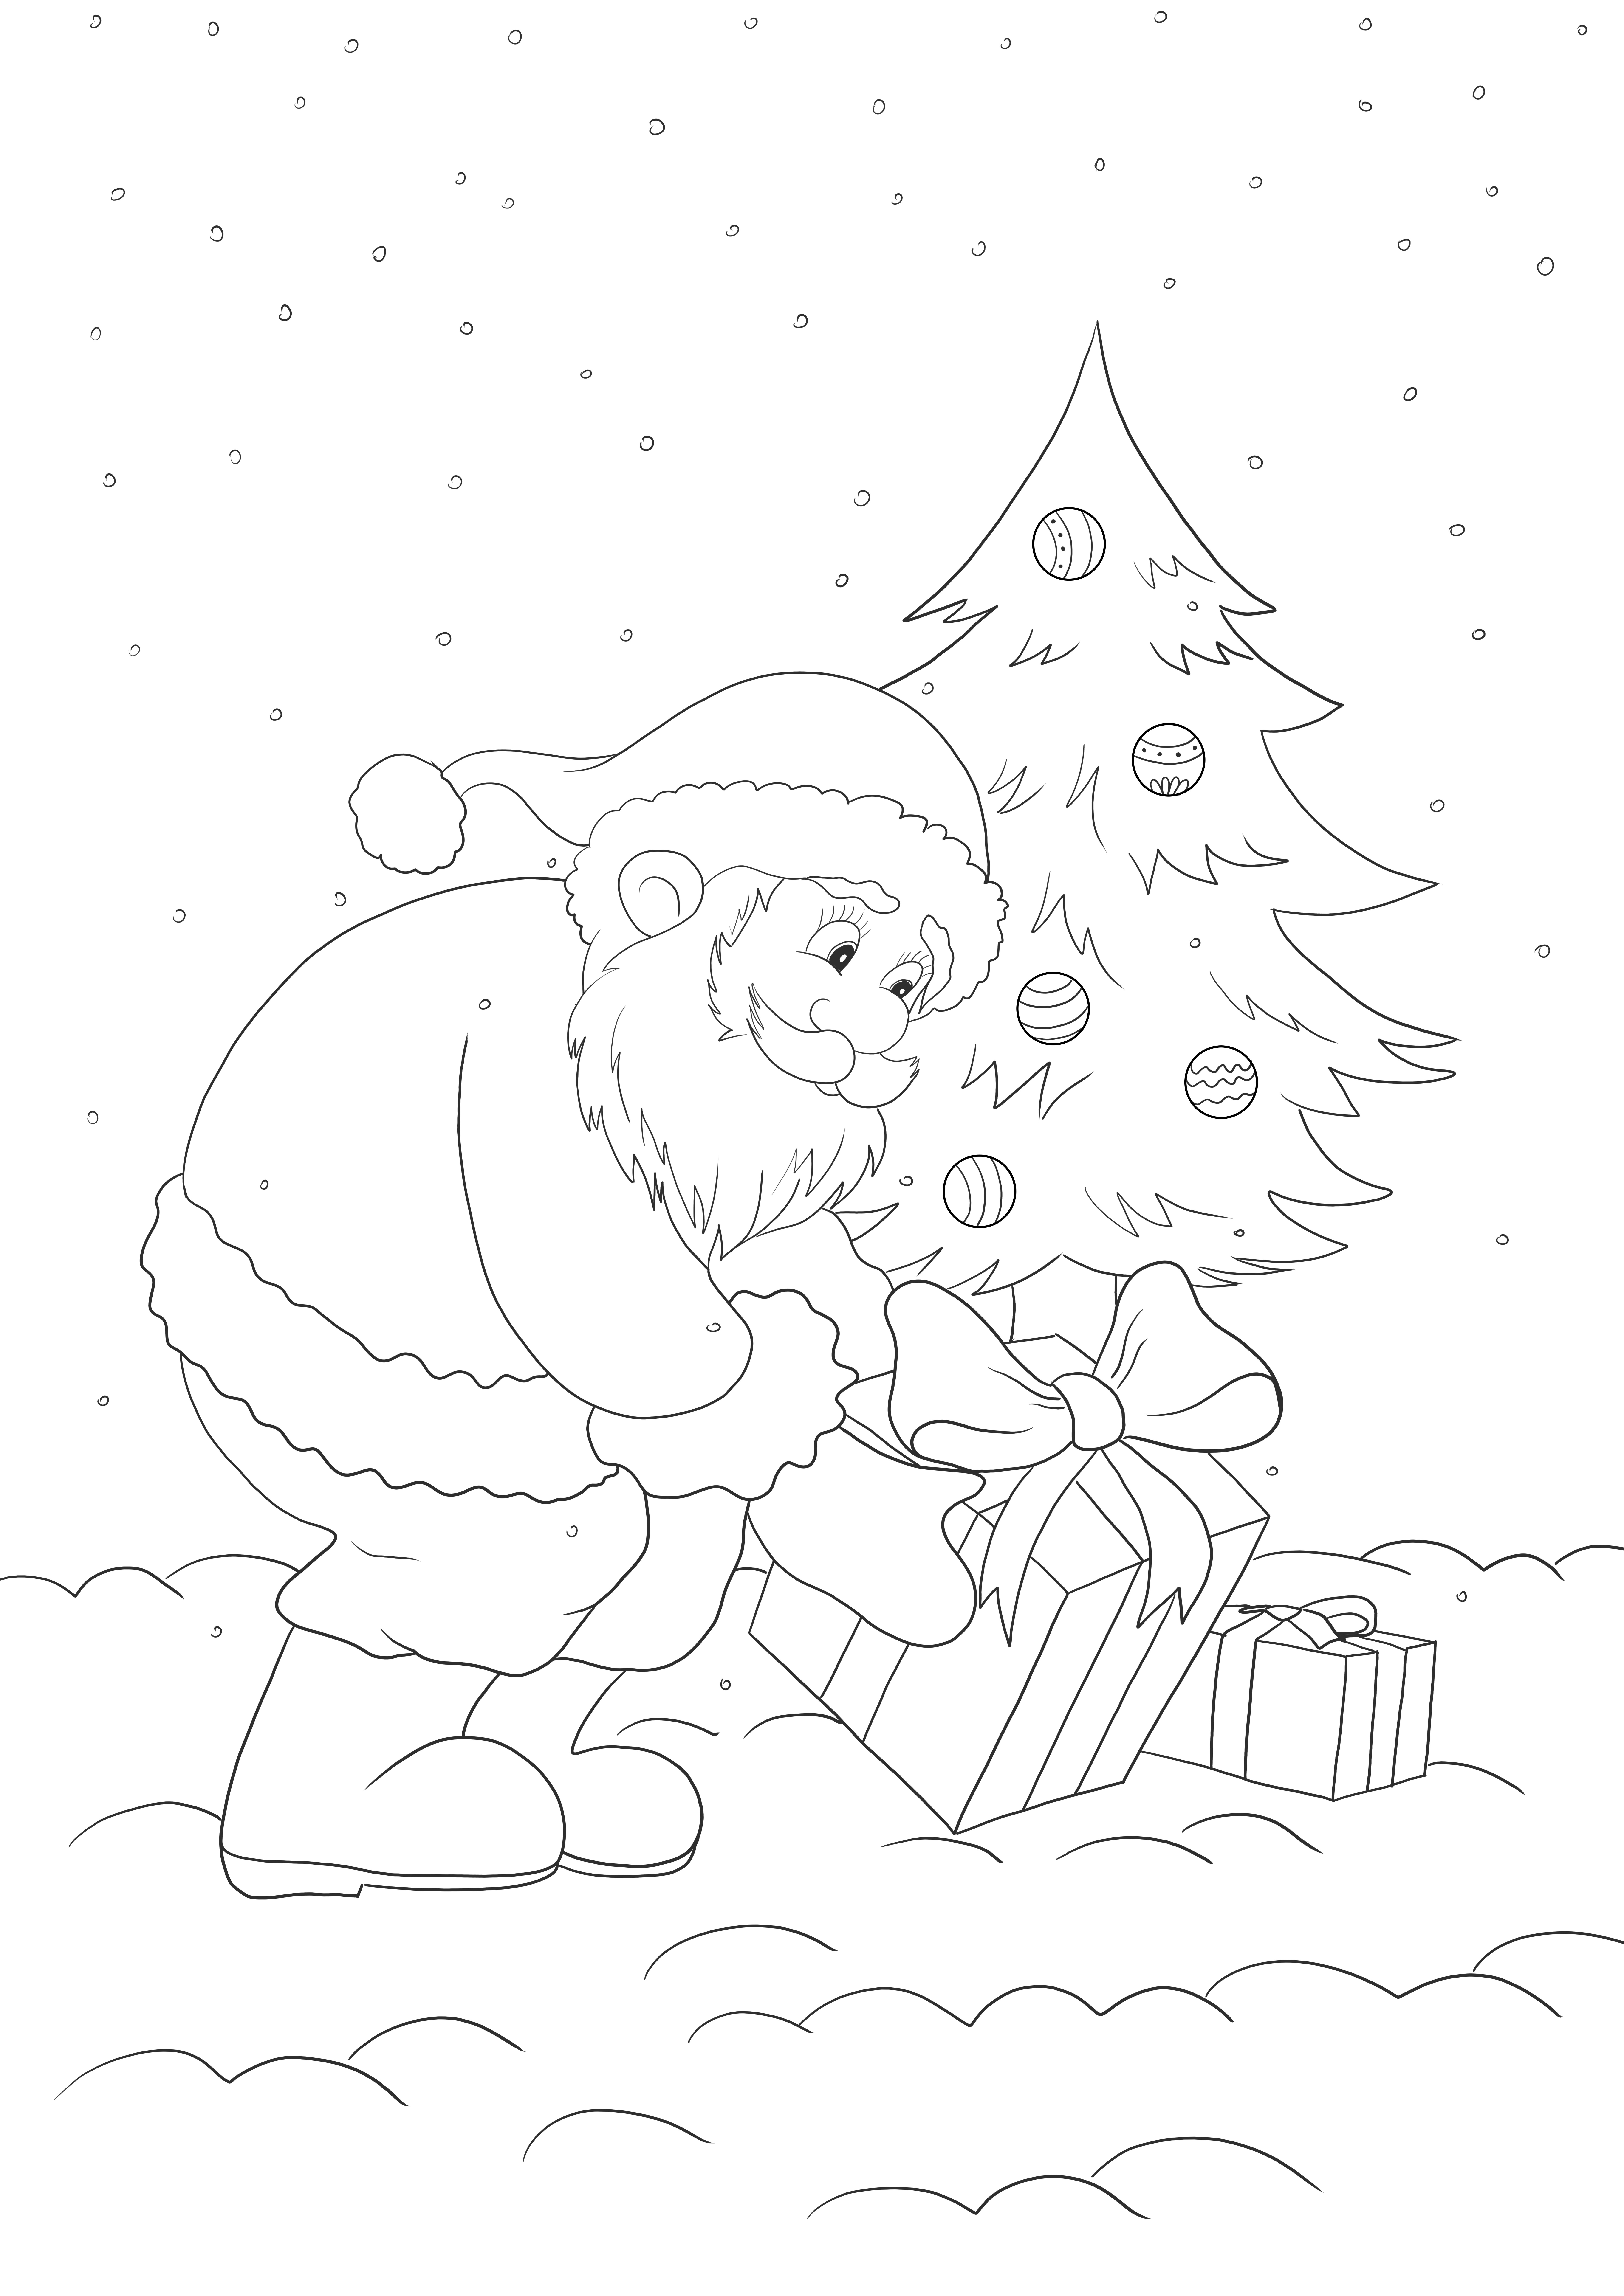 Coloriage et impression gratuite du Père Noël et des cadeaux de Noël